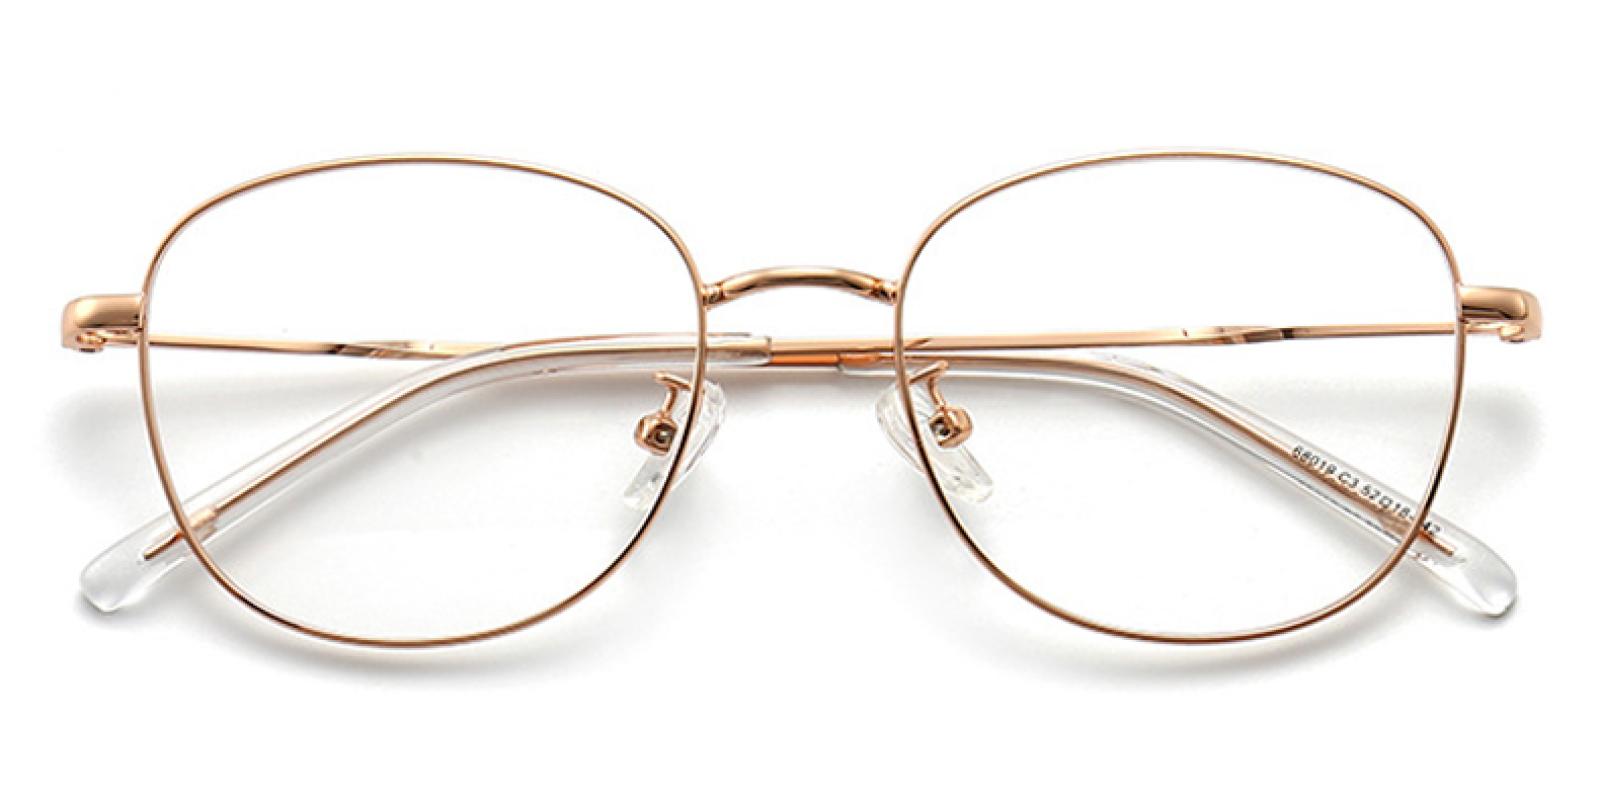 Wendy-Gold-Cat / Round-Metal-Eyeglasses-detail